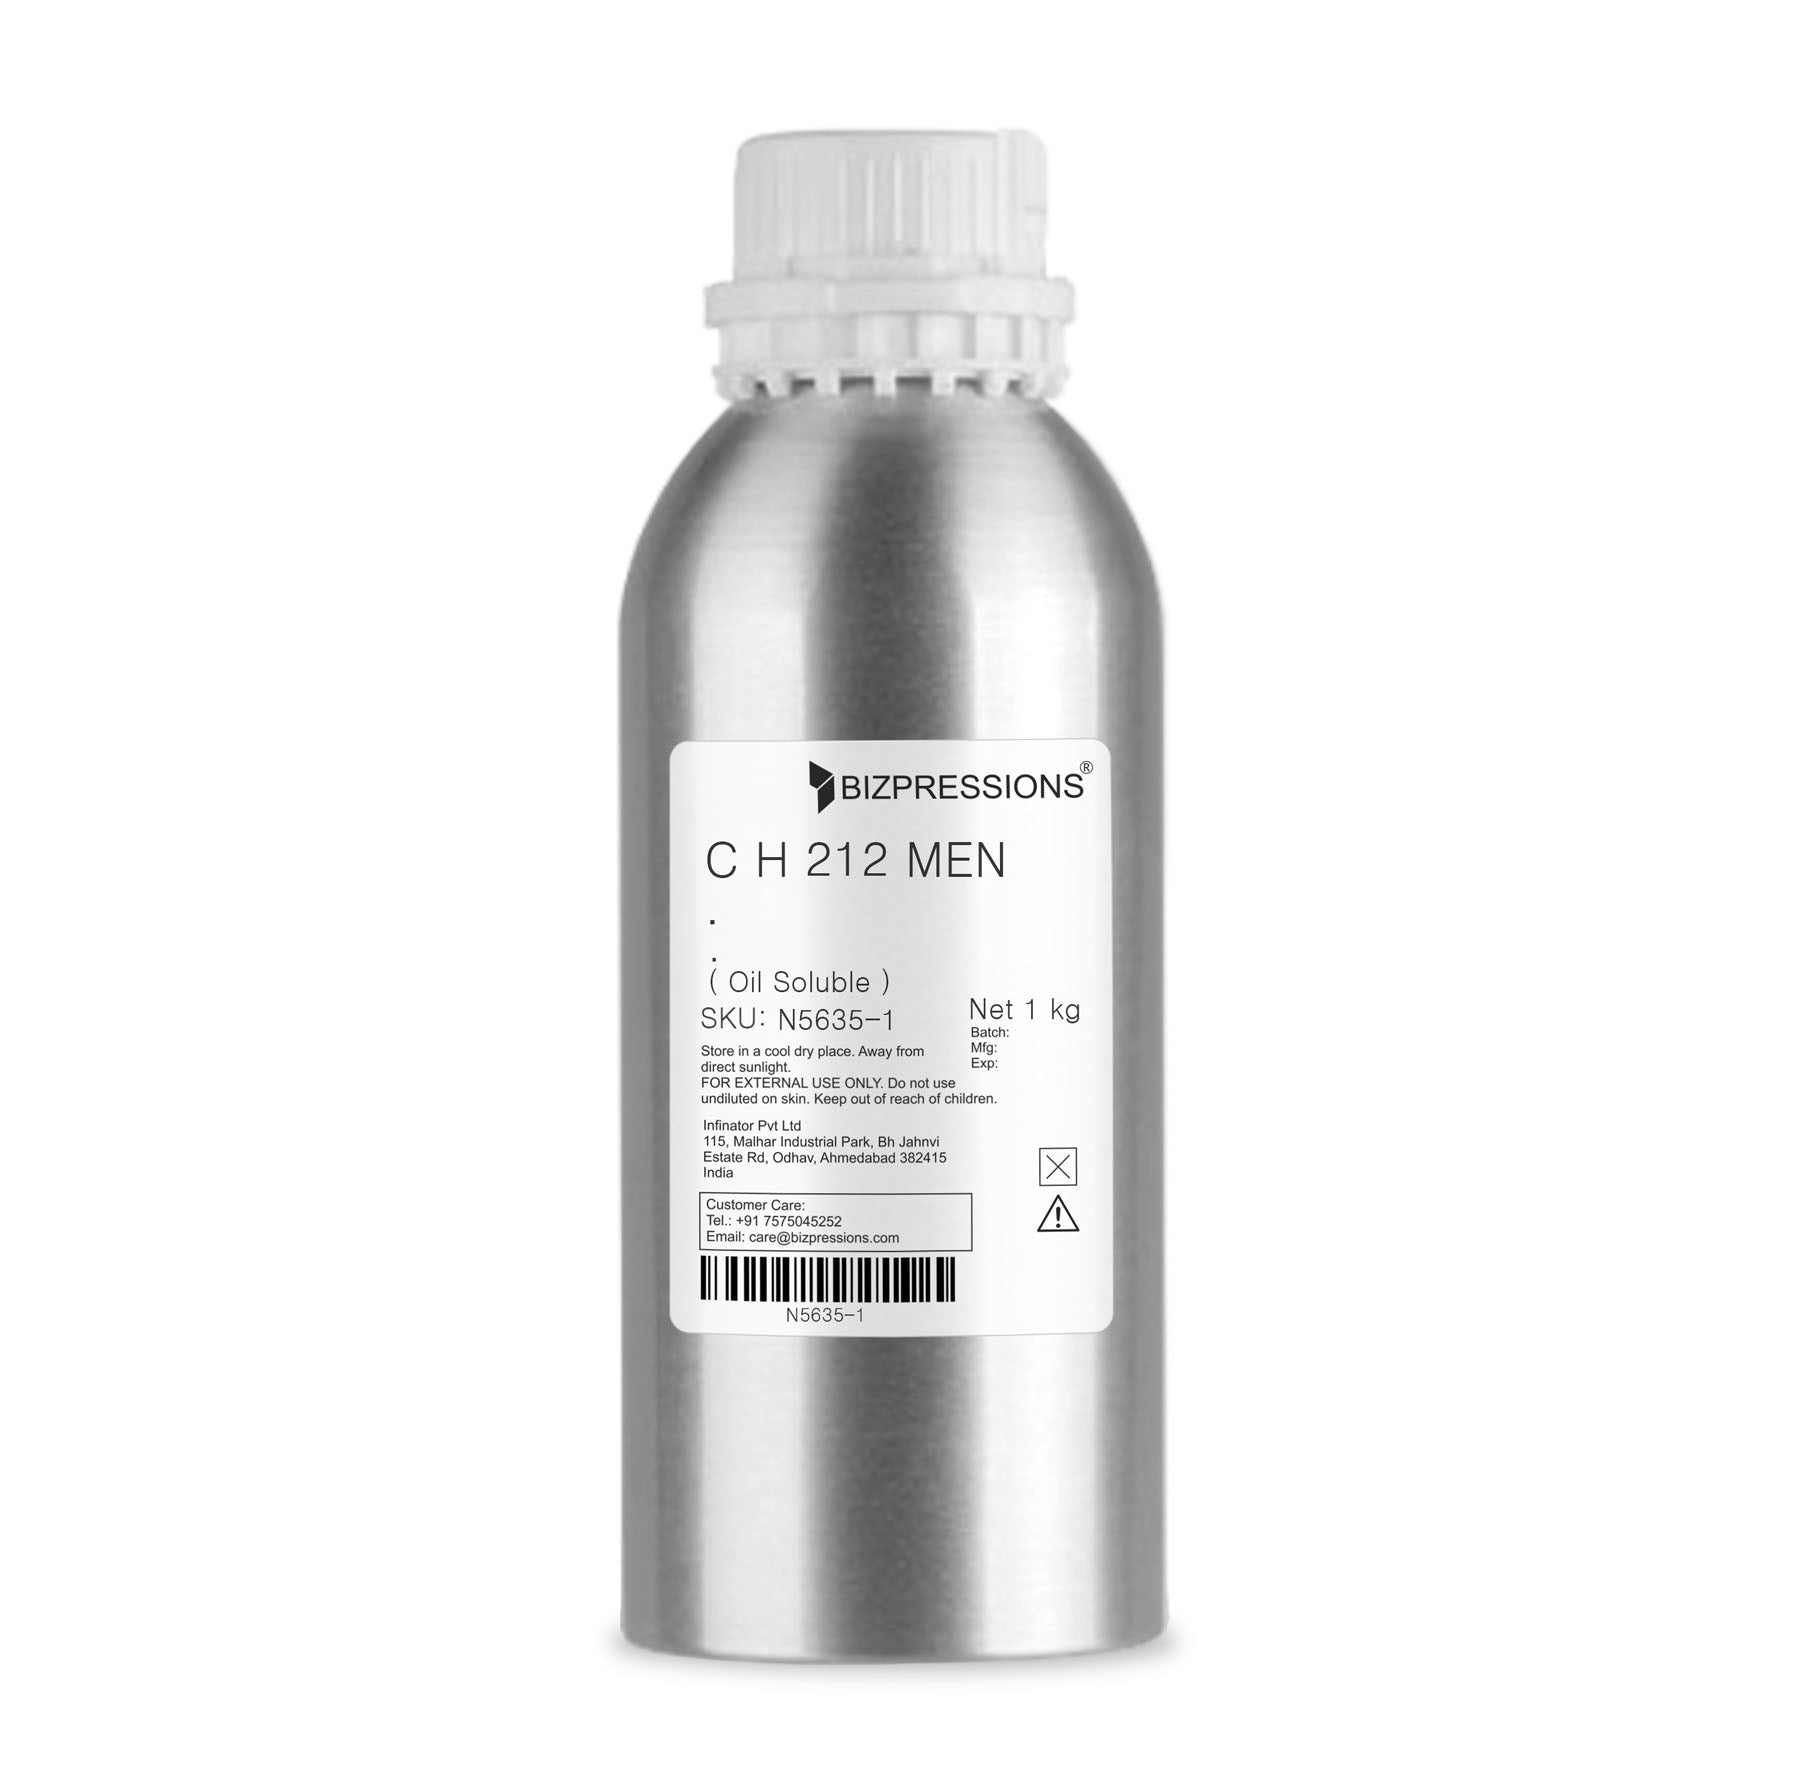 C H 212 MEN - Fragrance ( Oil Soluble ) - 1 kg